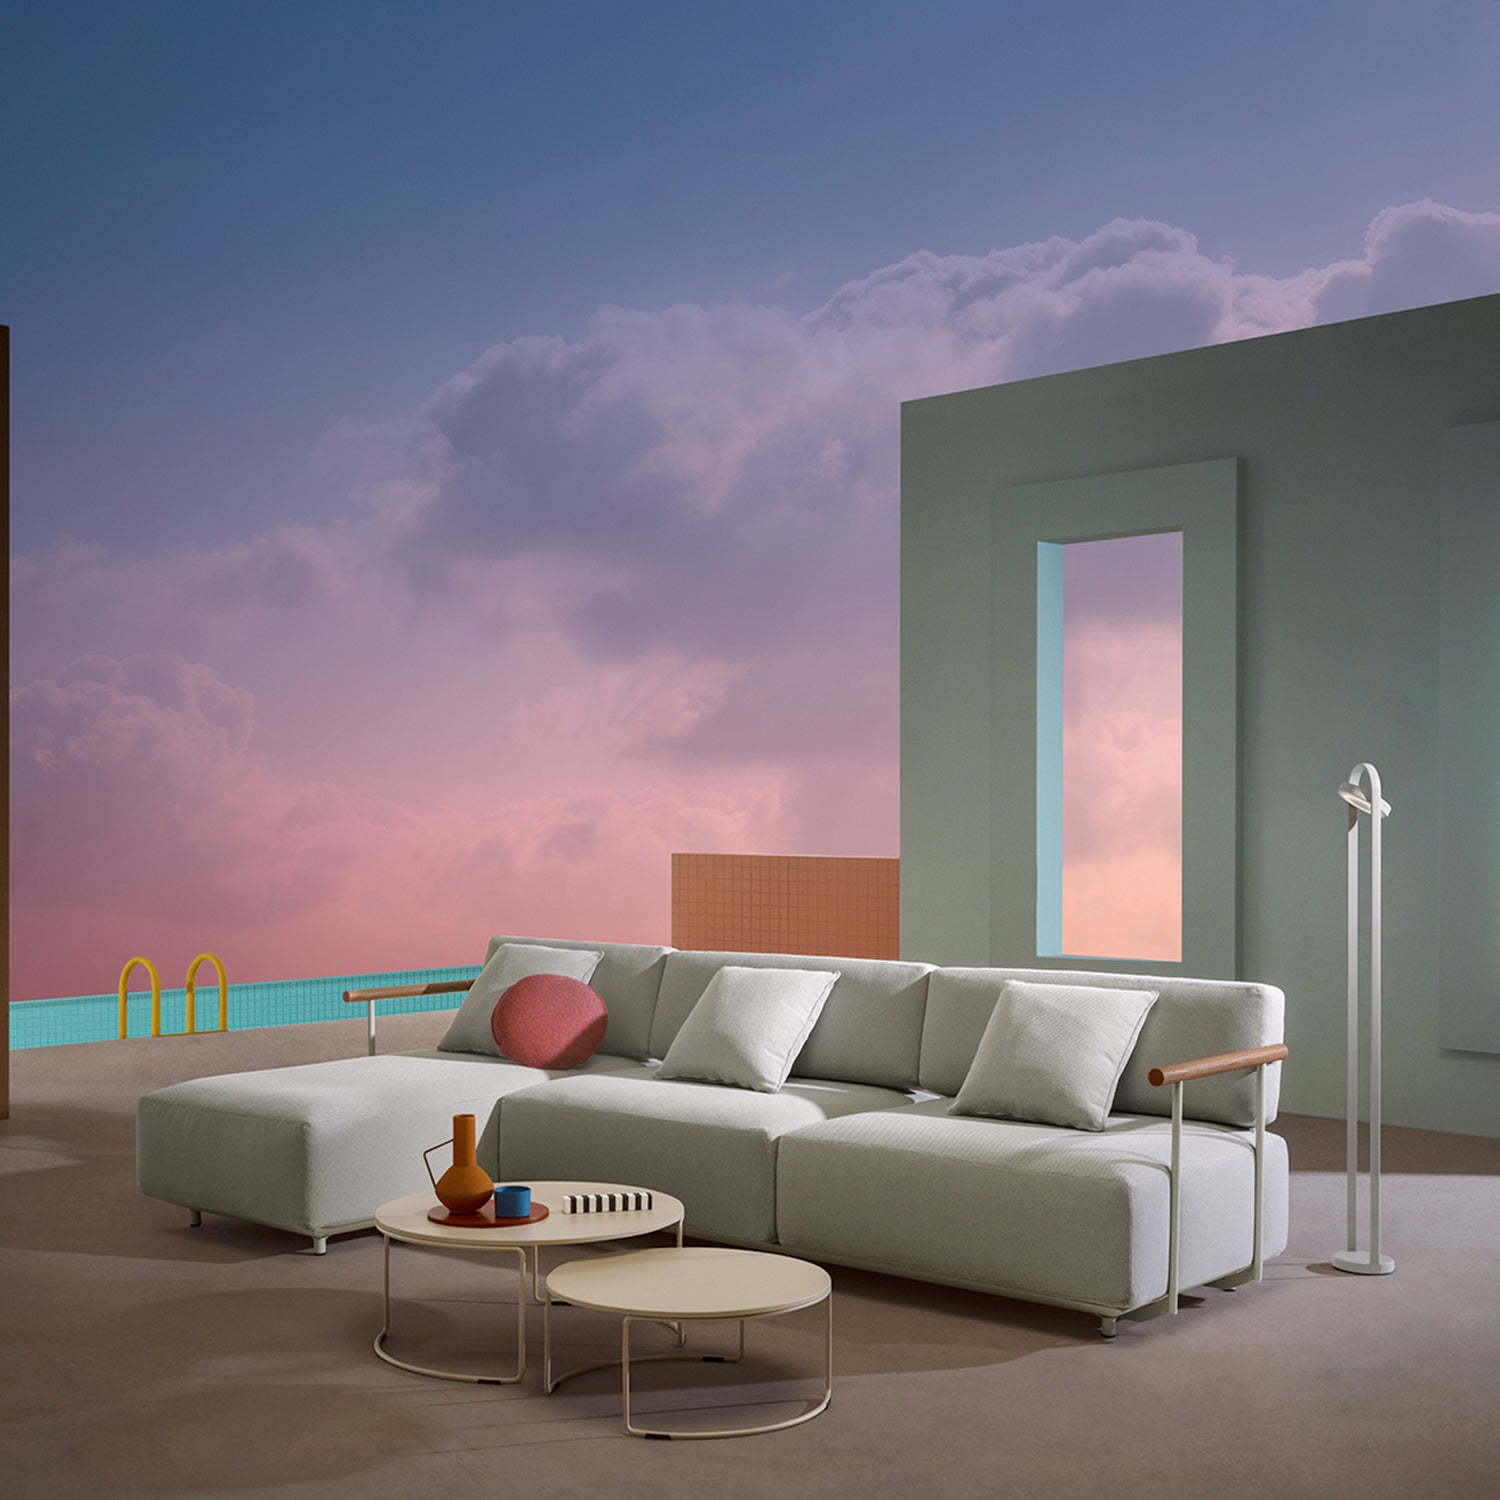 Pedrali Giravolta 130 outdoor floor lamp in beige with arki sofa ambience image